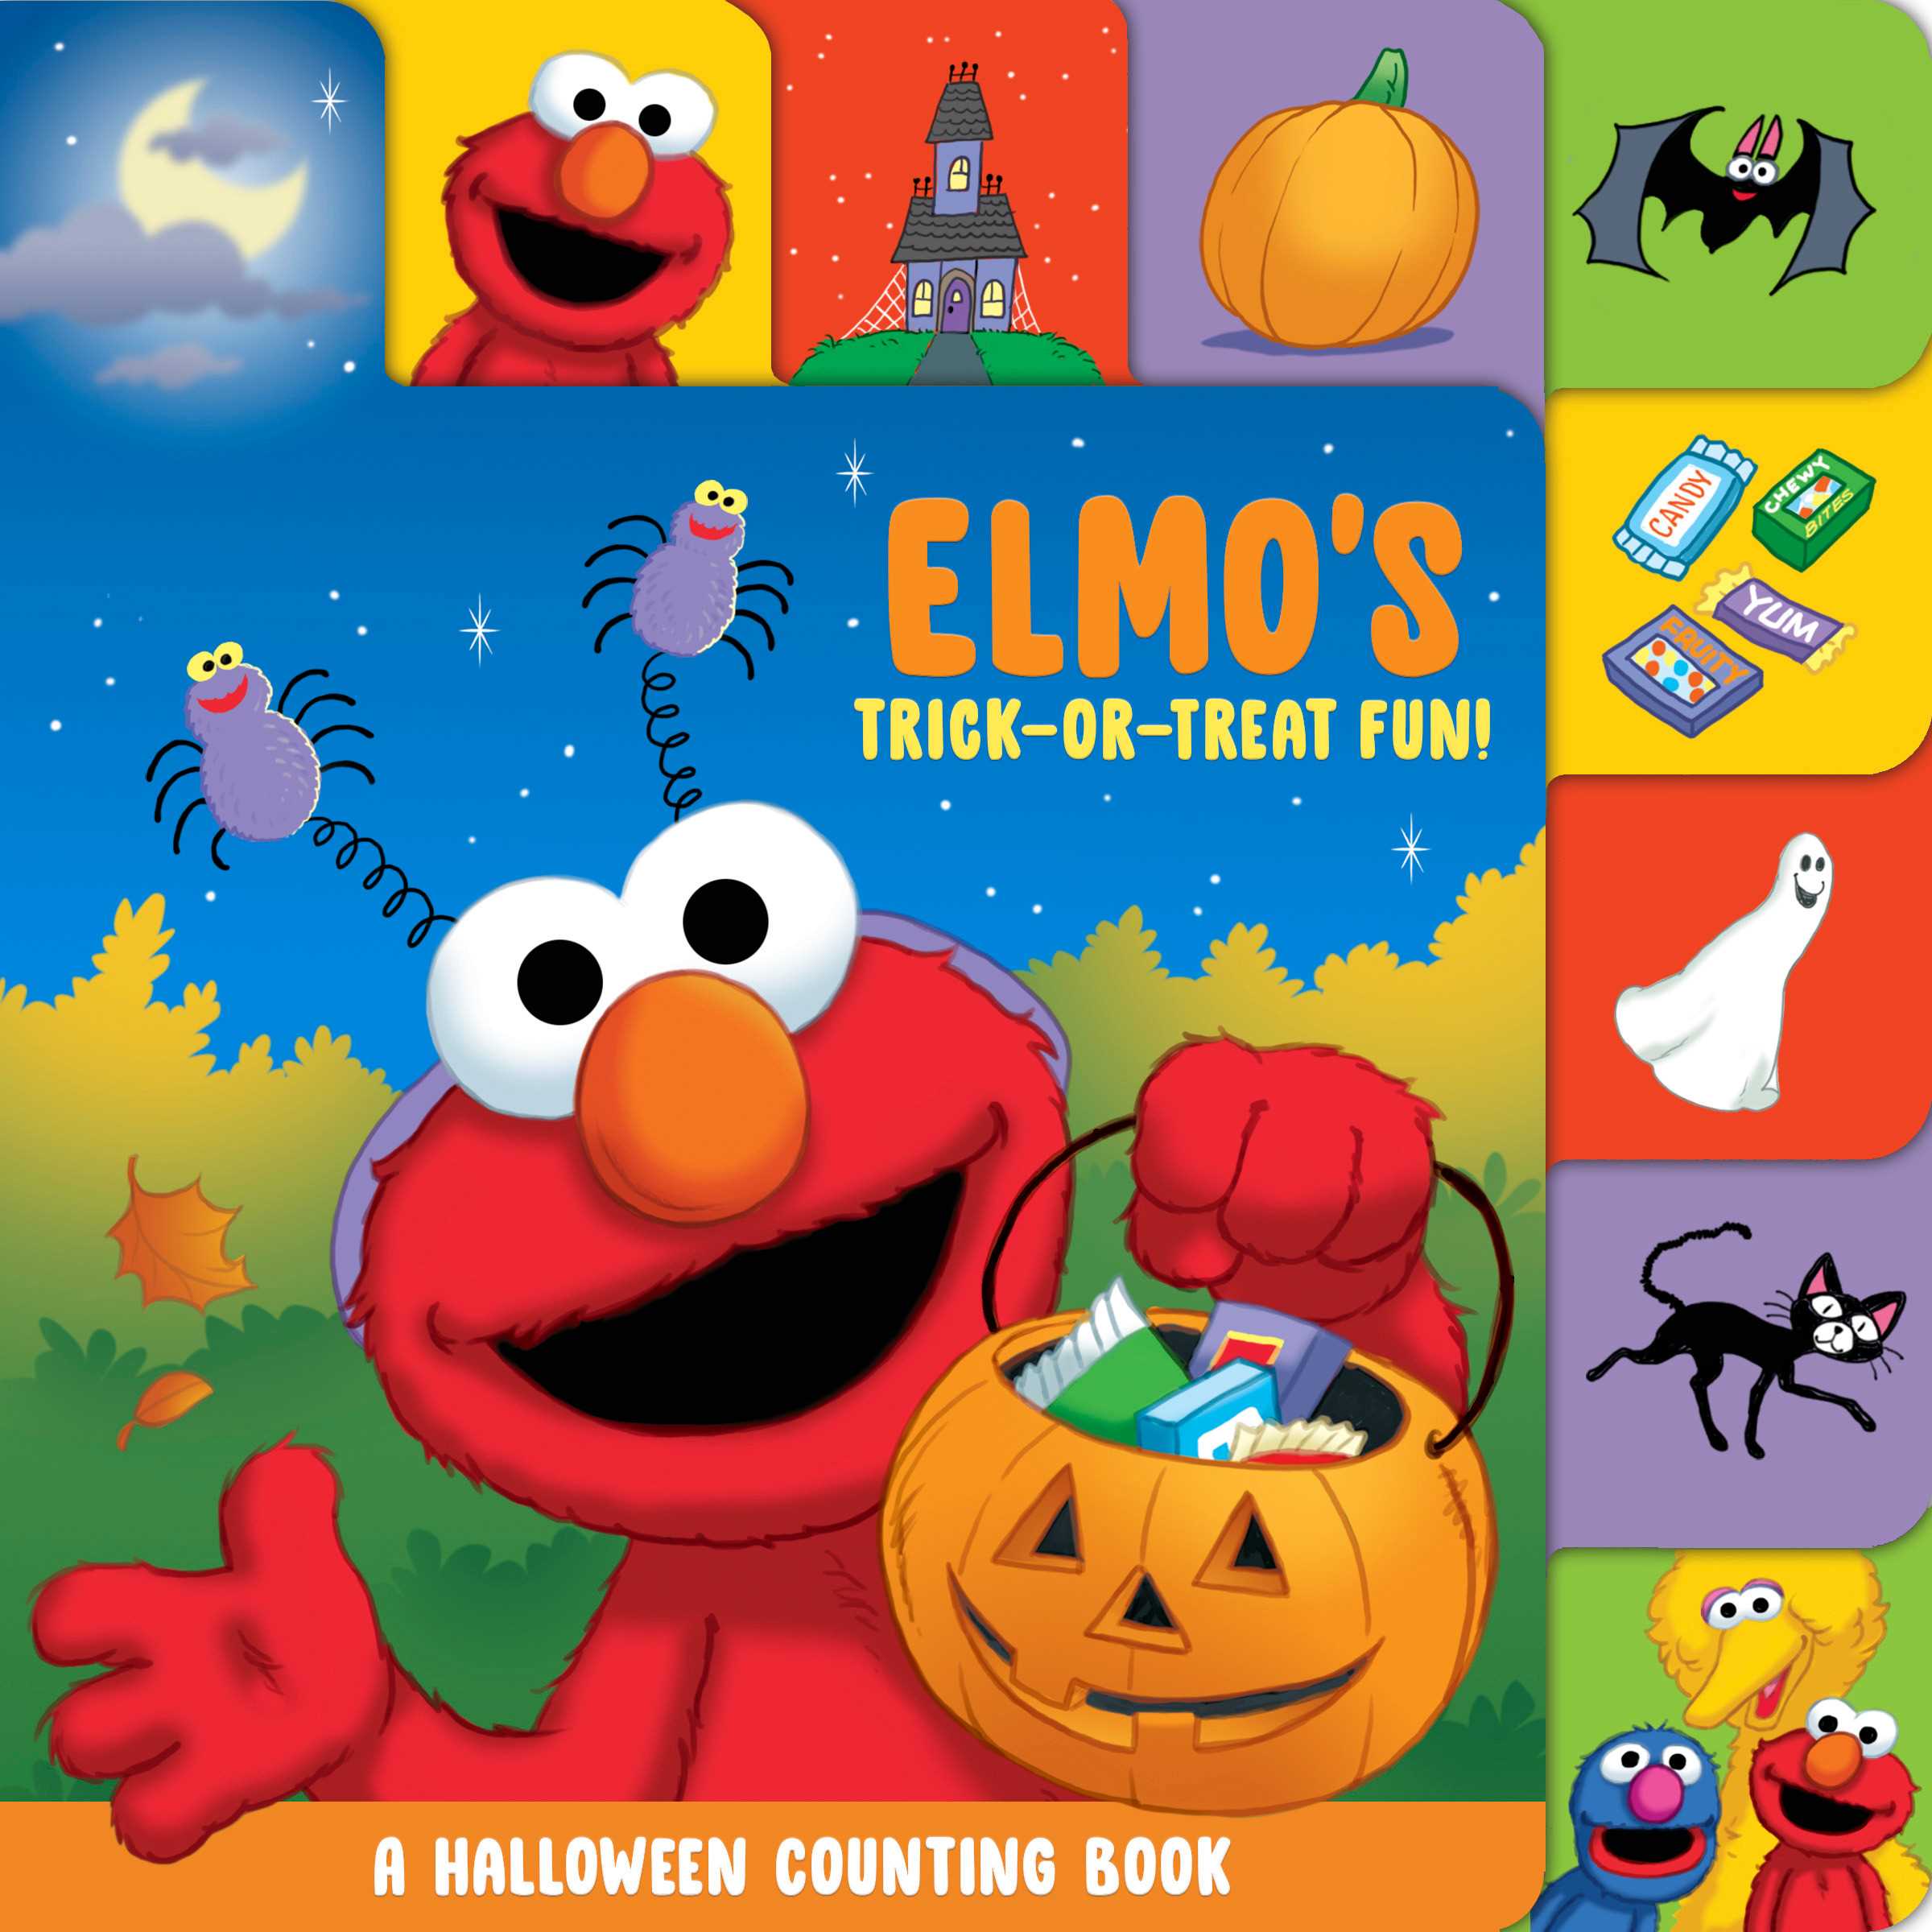 Elmo's Trick-or-Treat Fun!